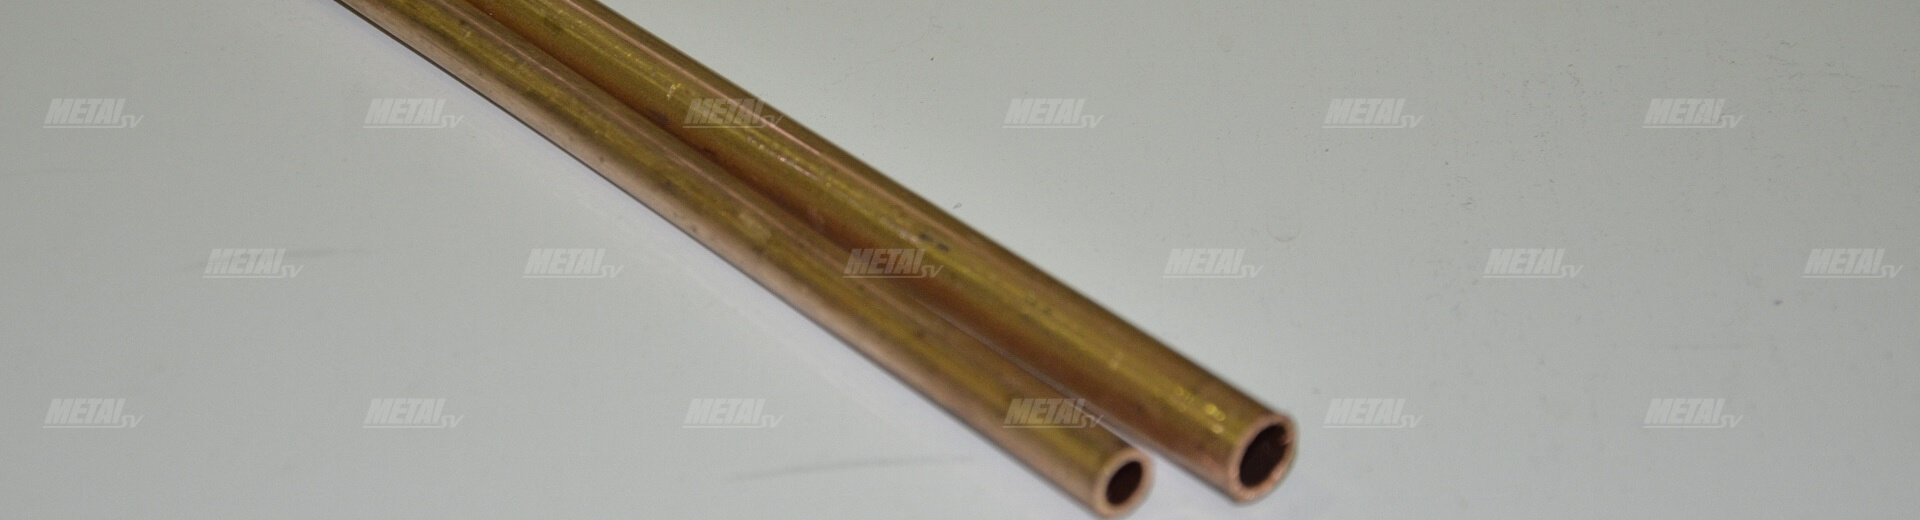 14 мм — медная труба для Кирова изображение №3